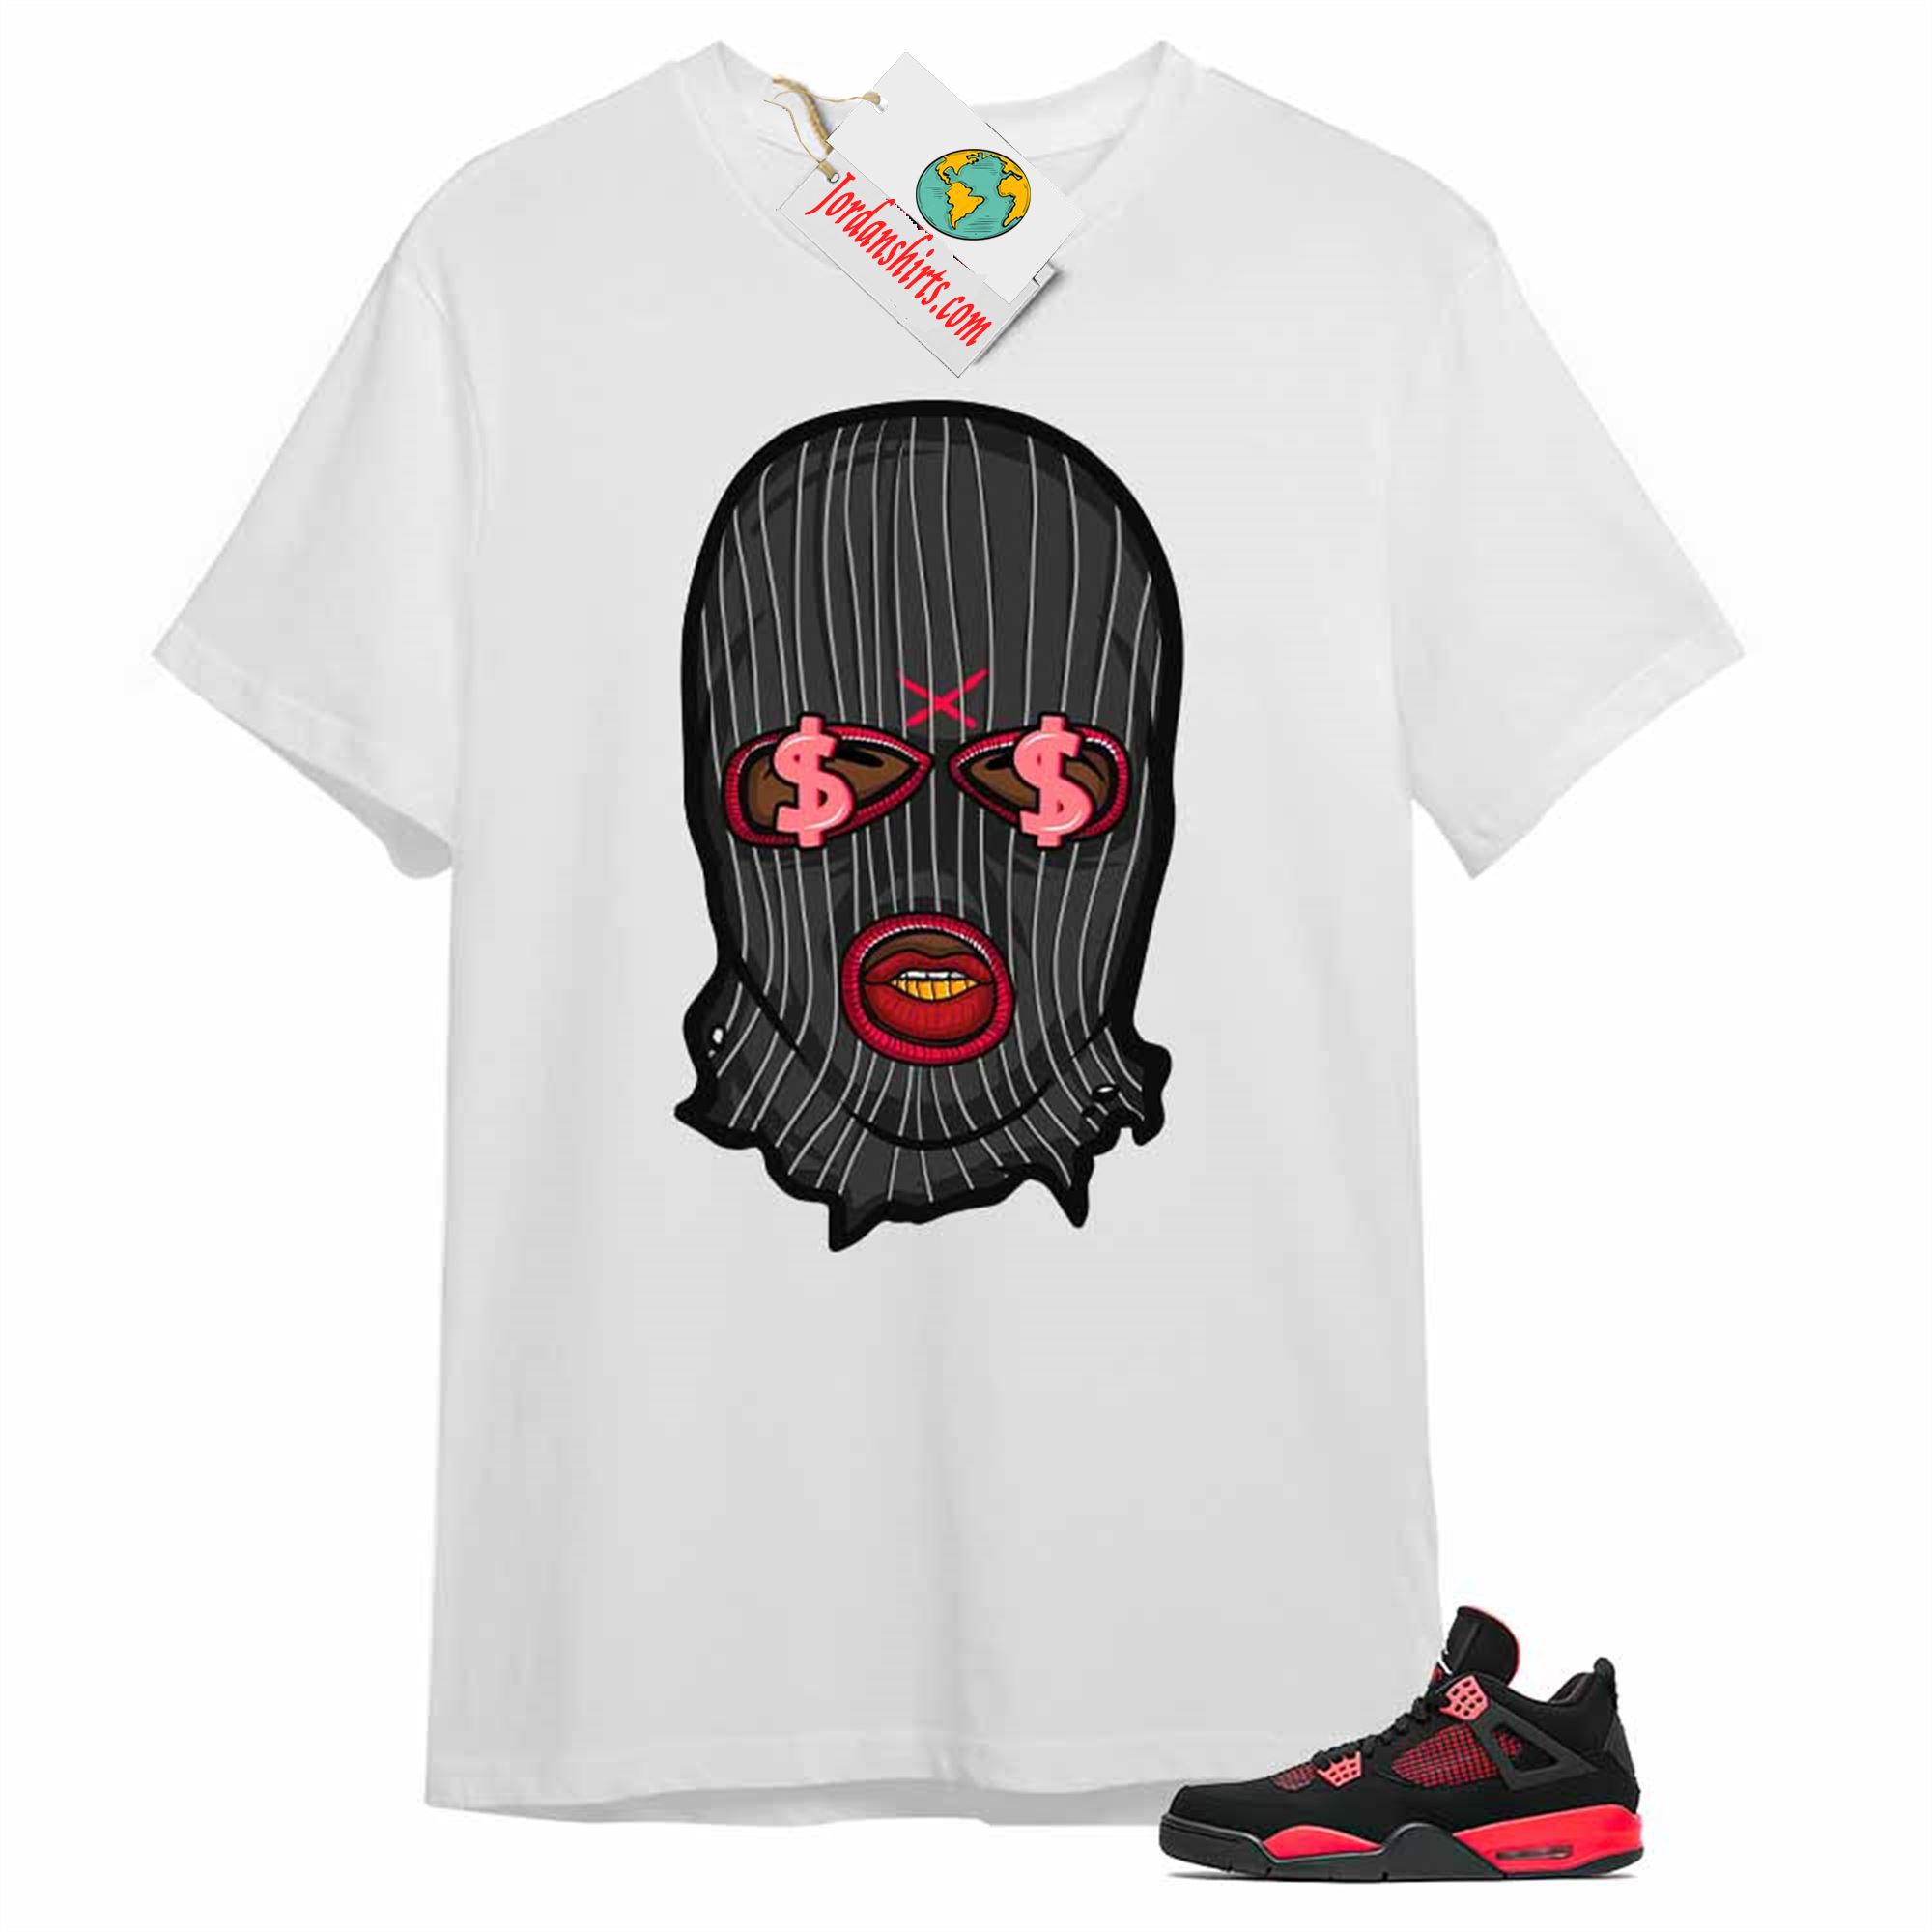 Jordan 4 Shirt, Gangster Ski Mask Money White Air Jordan 4 Red Thunder 4s Full Size Up To 5xl